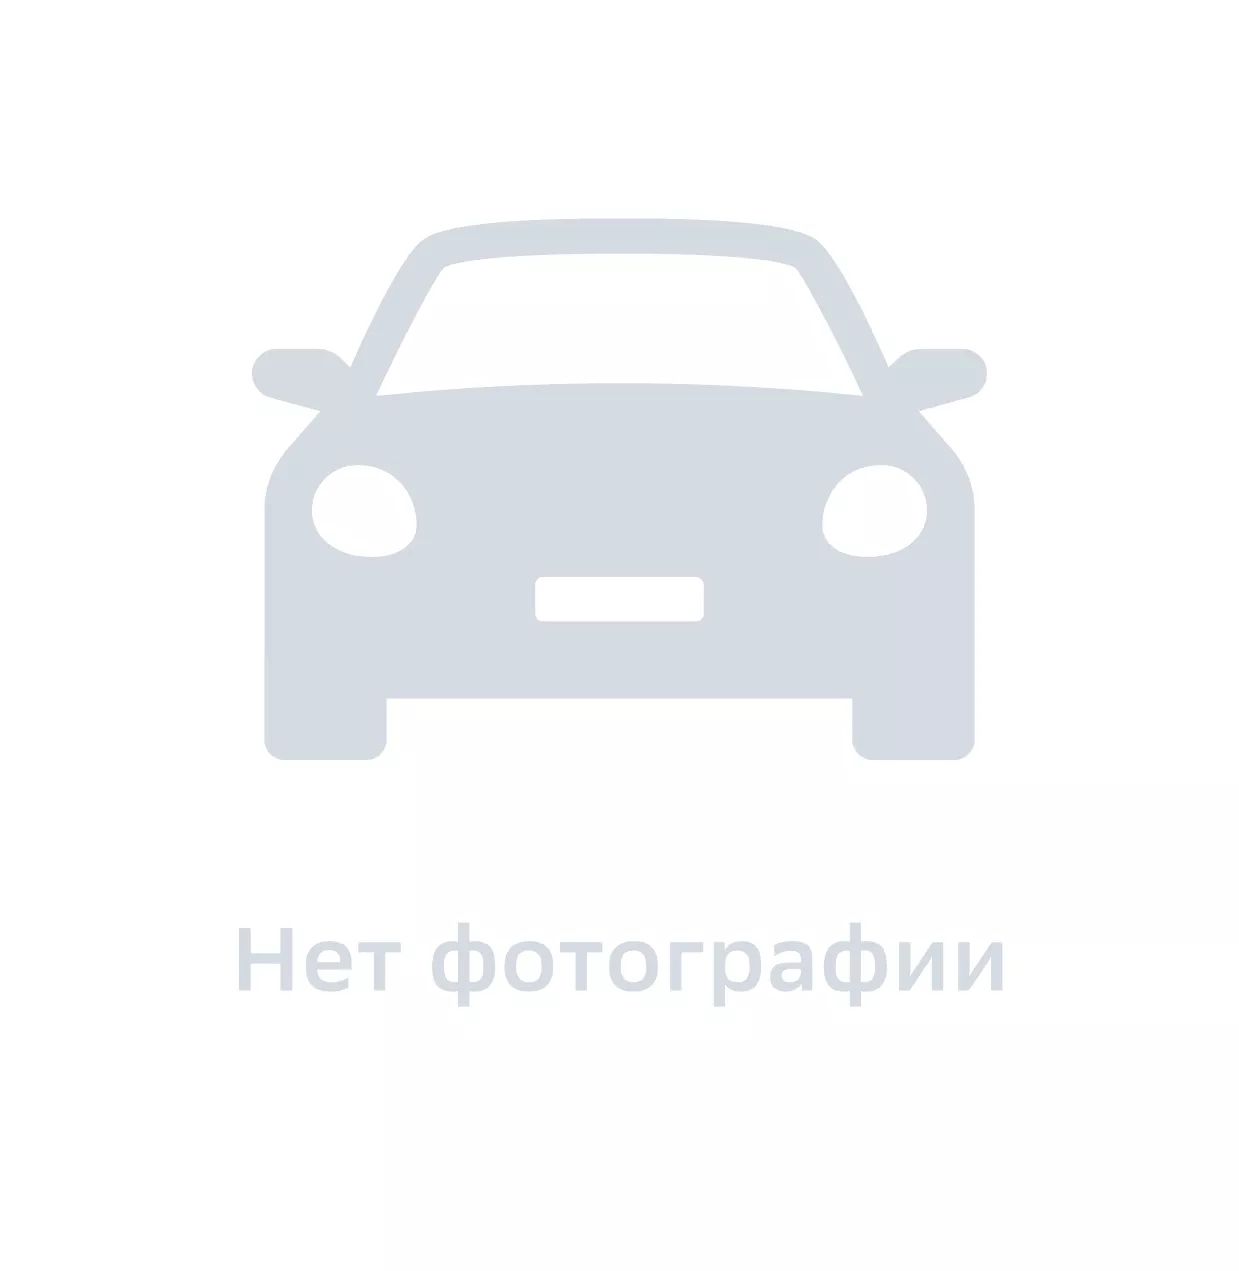 Брызговик передний левый, Hyundai-KIA, арт. 0K2FA51861, цена за 1 шт.